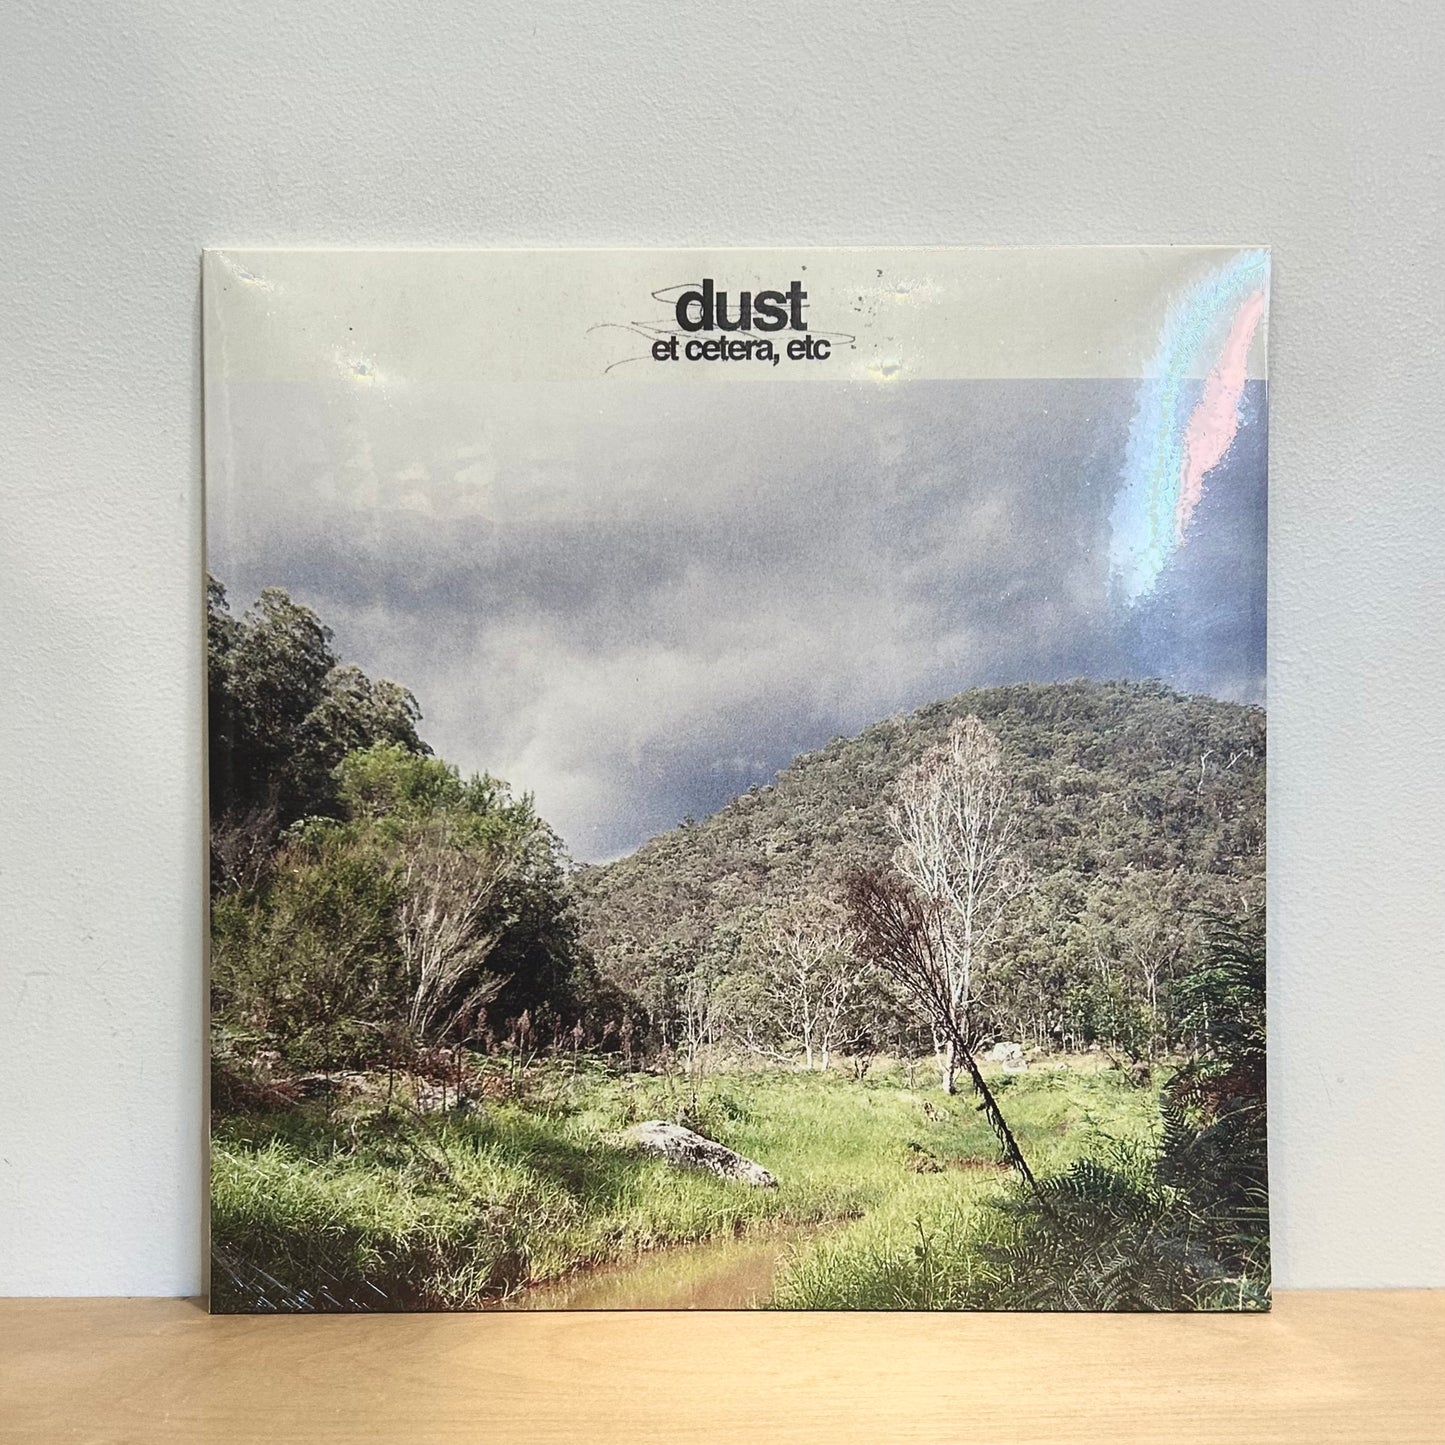 dust - et cetera, etc. LP [Ltd. Ed. Translucent Blue Vinyl]